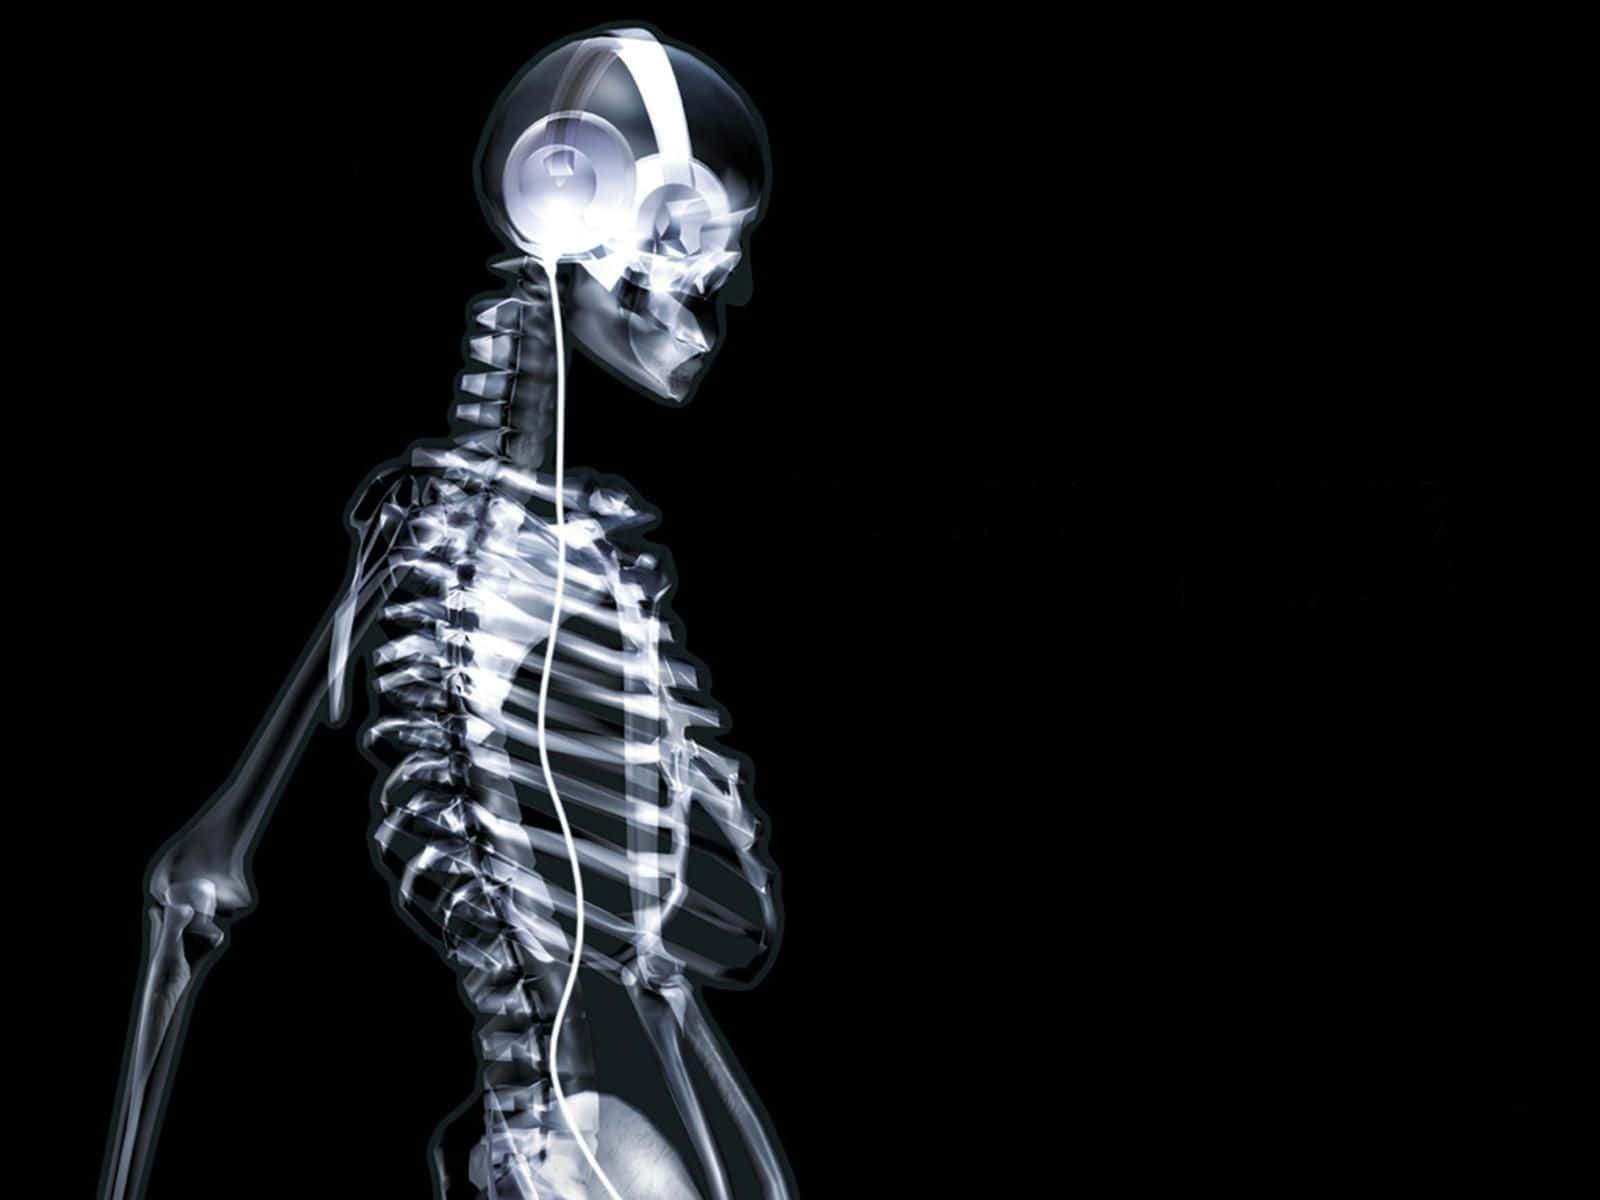 Umesqueleto Com Fones De Ouvido Está Em Pé Em Um Fundo Preto. Papel de Parede